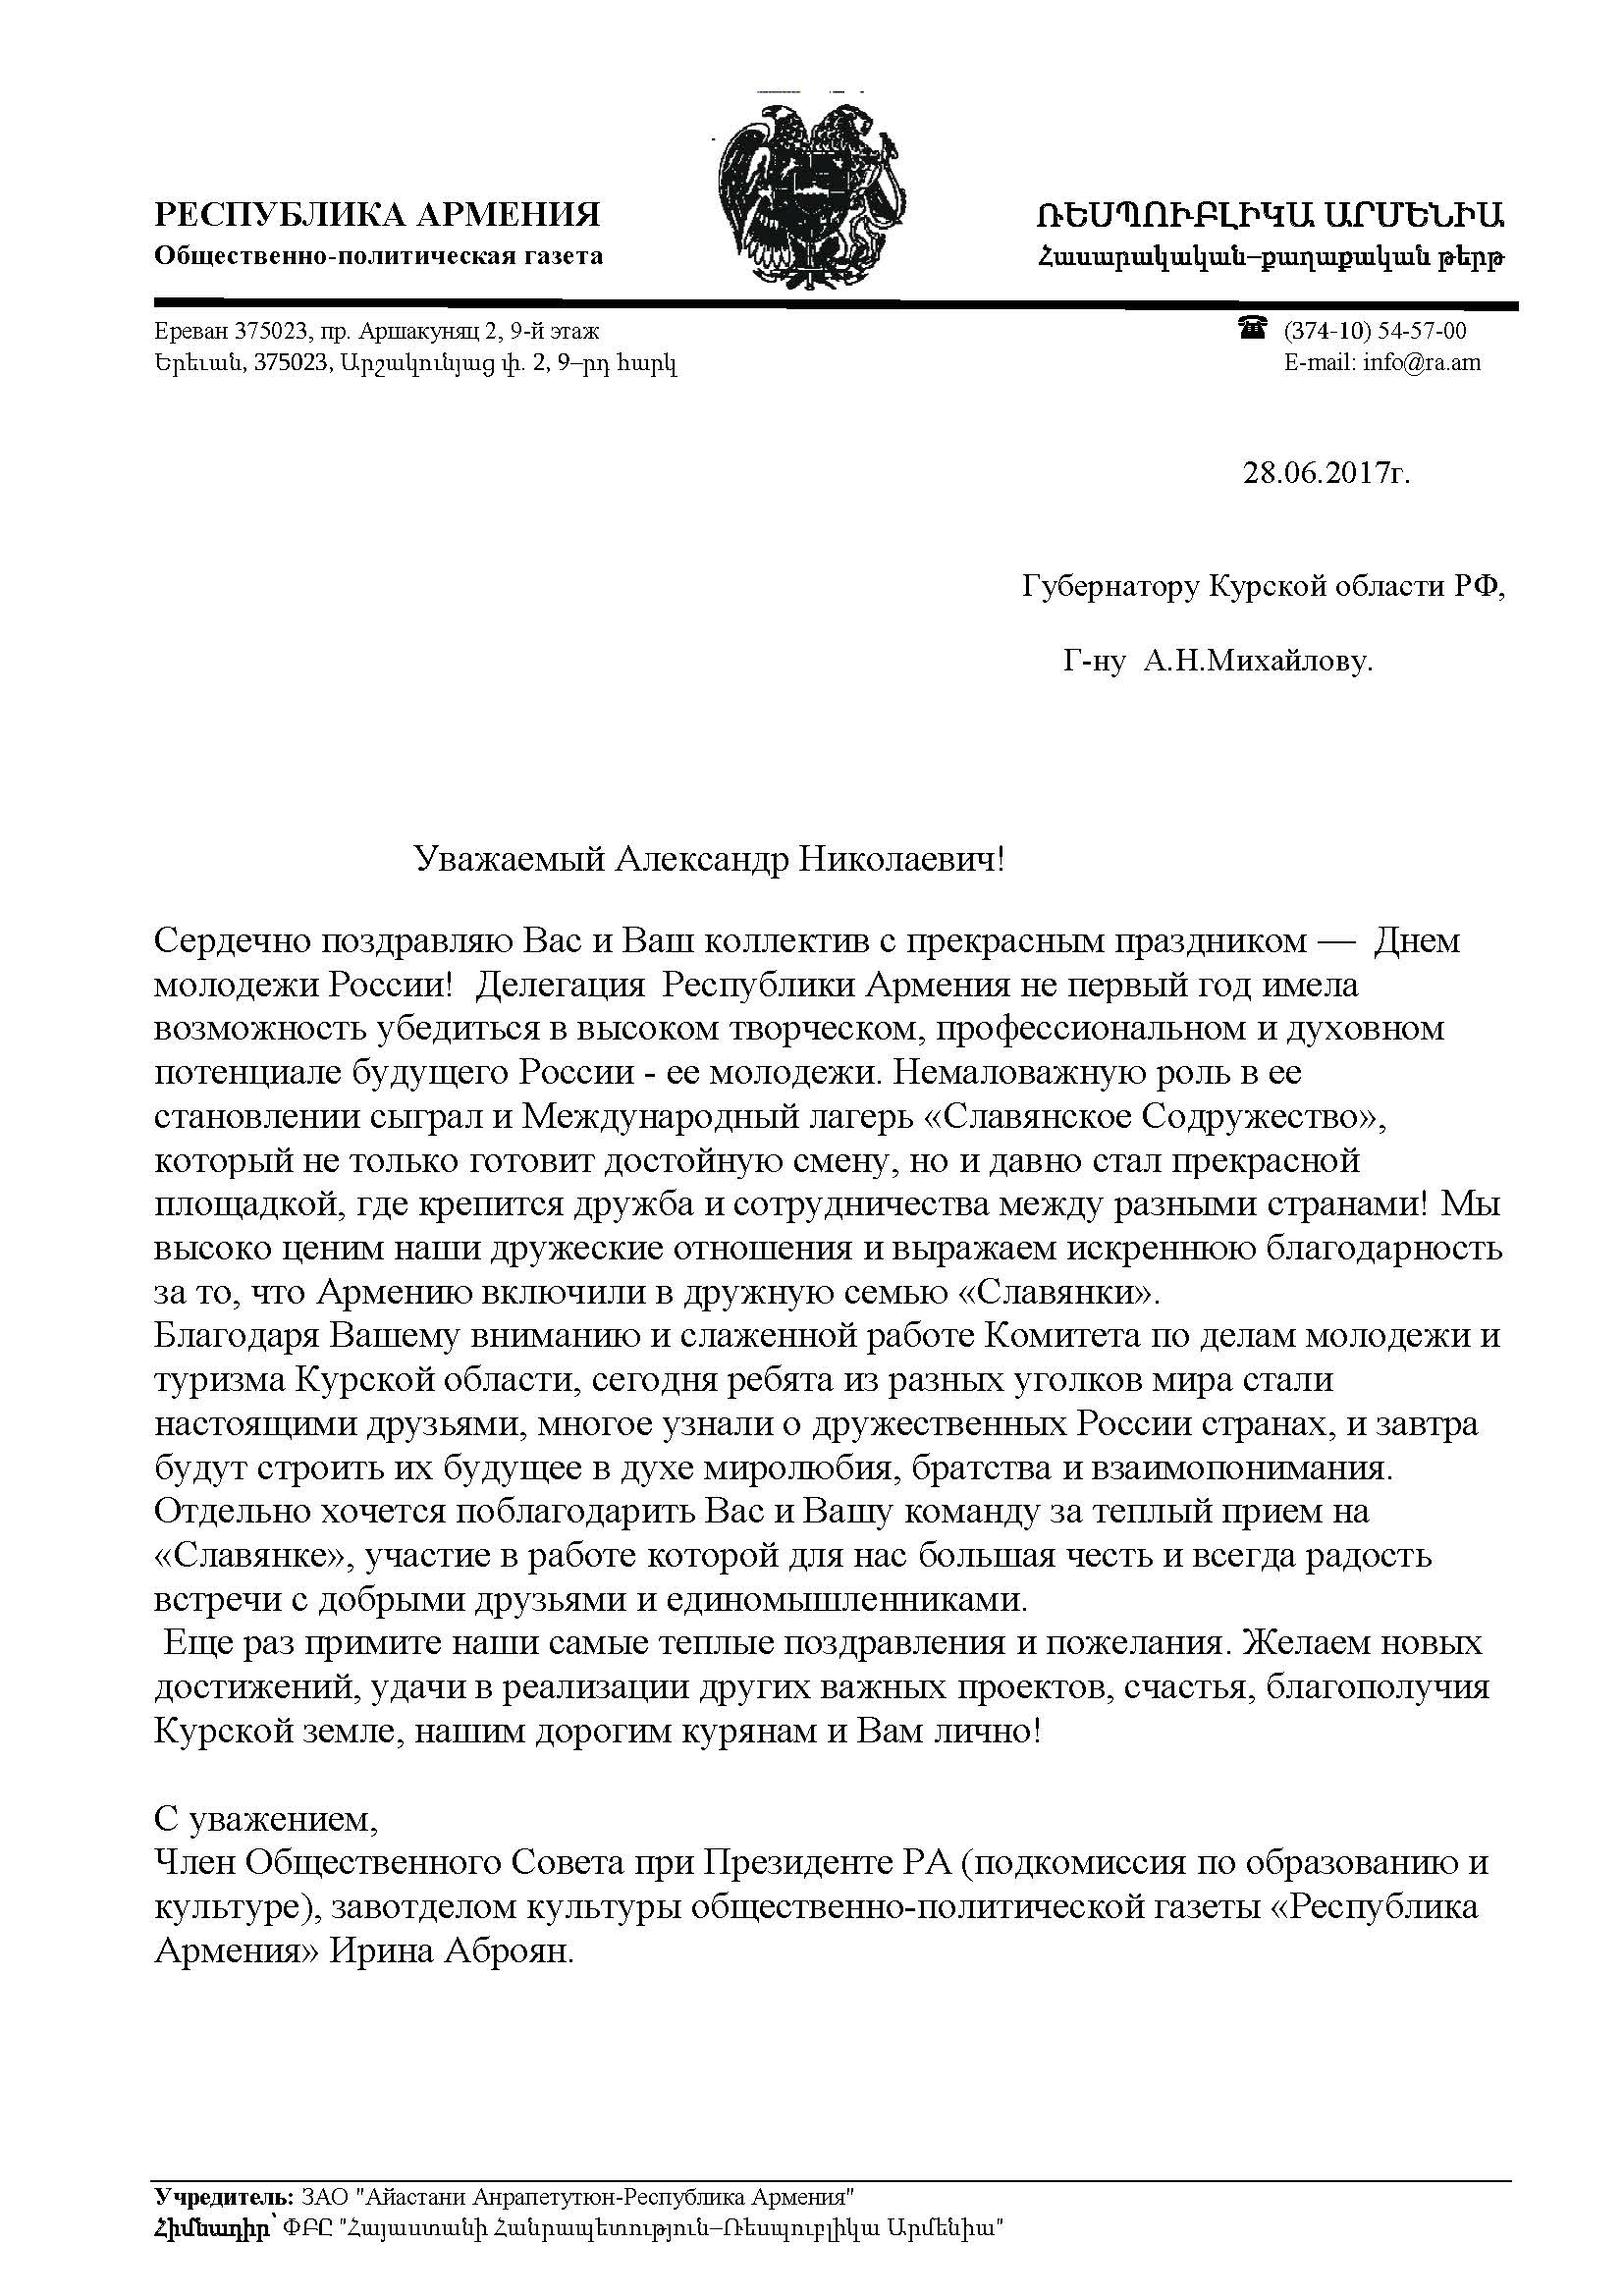 Письмо Губернатору Курской области